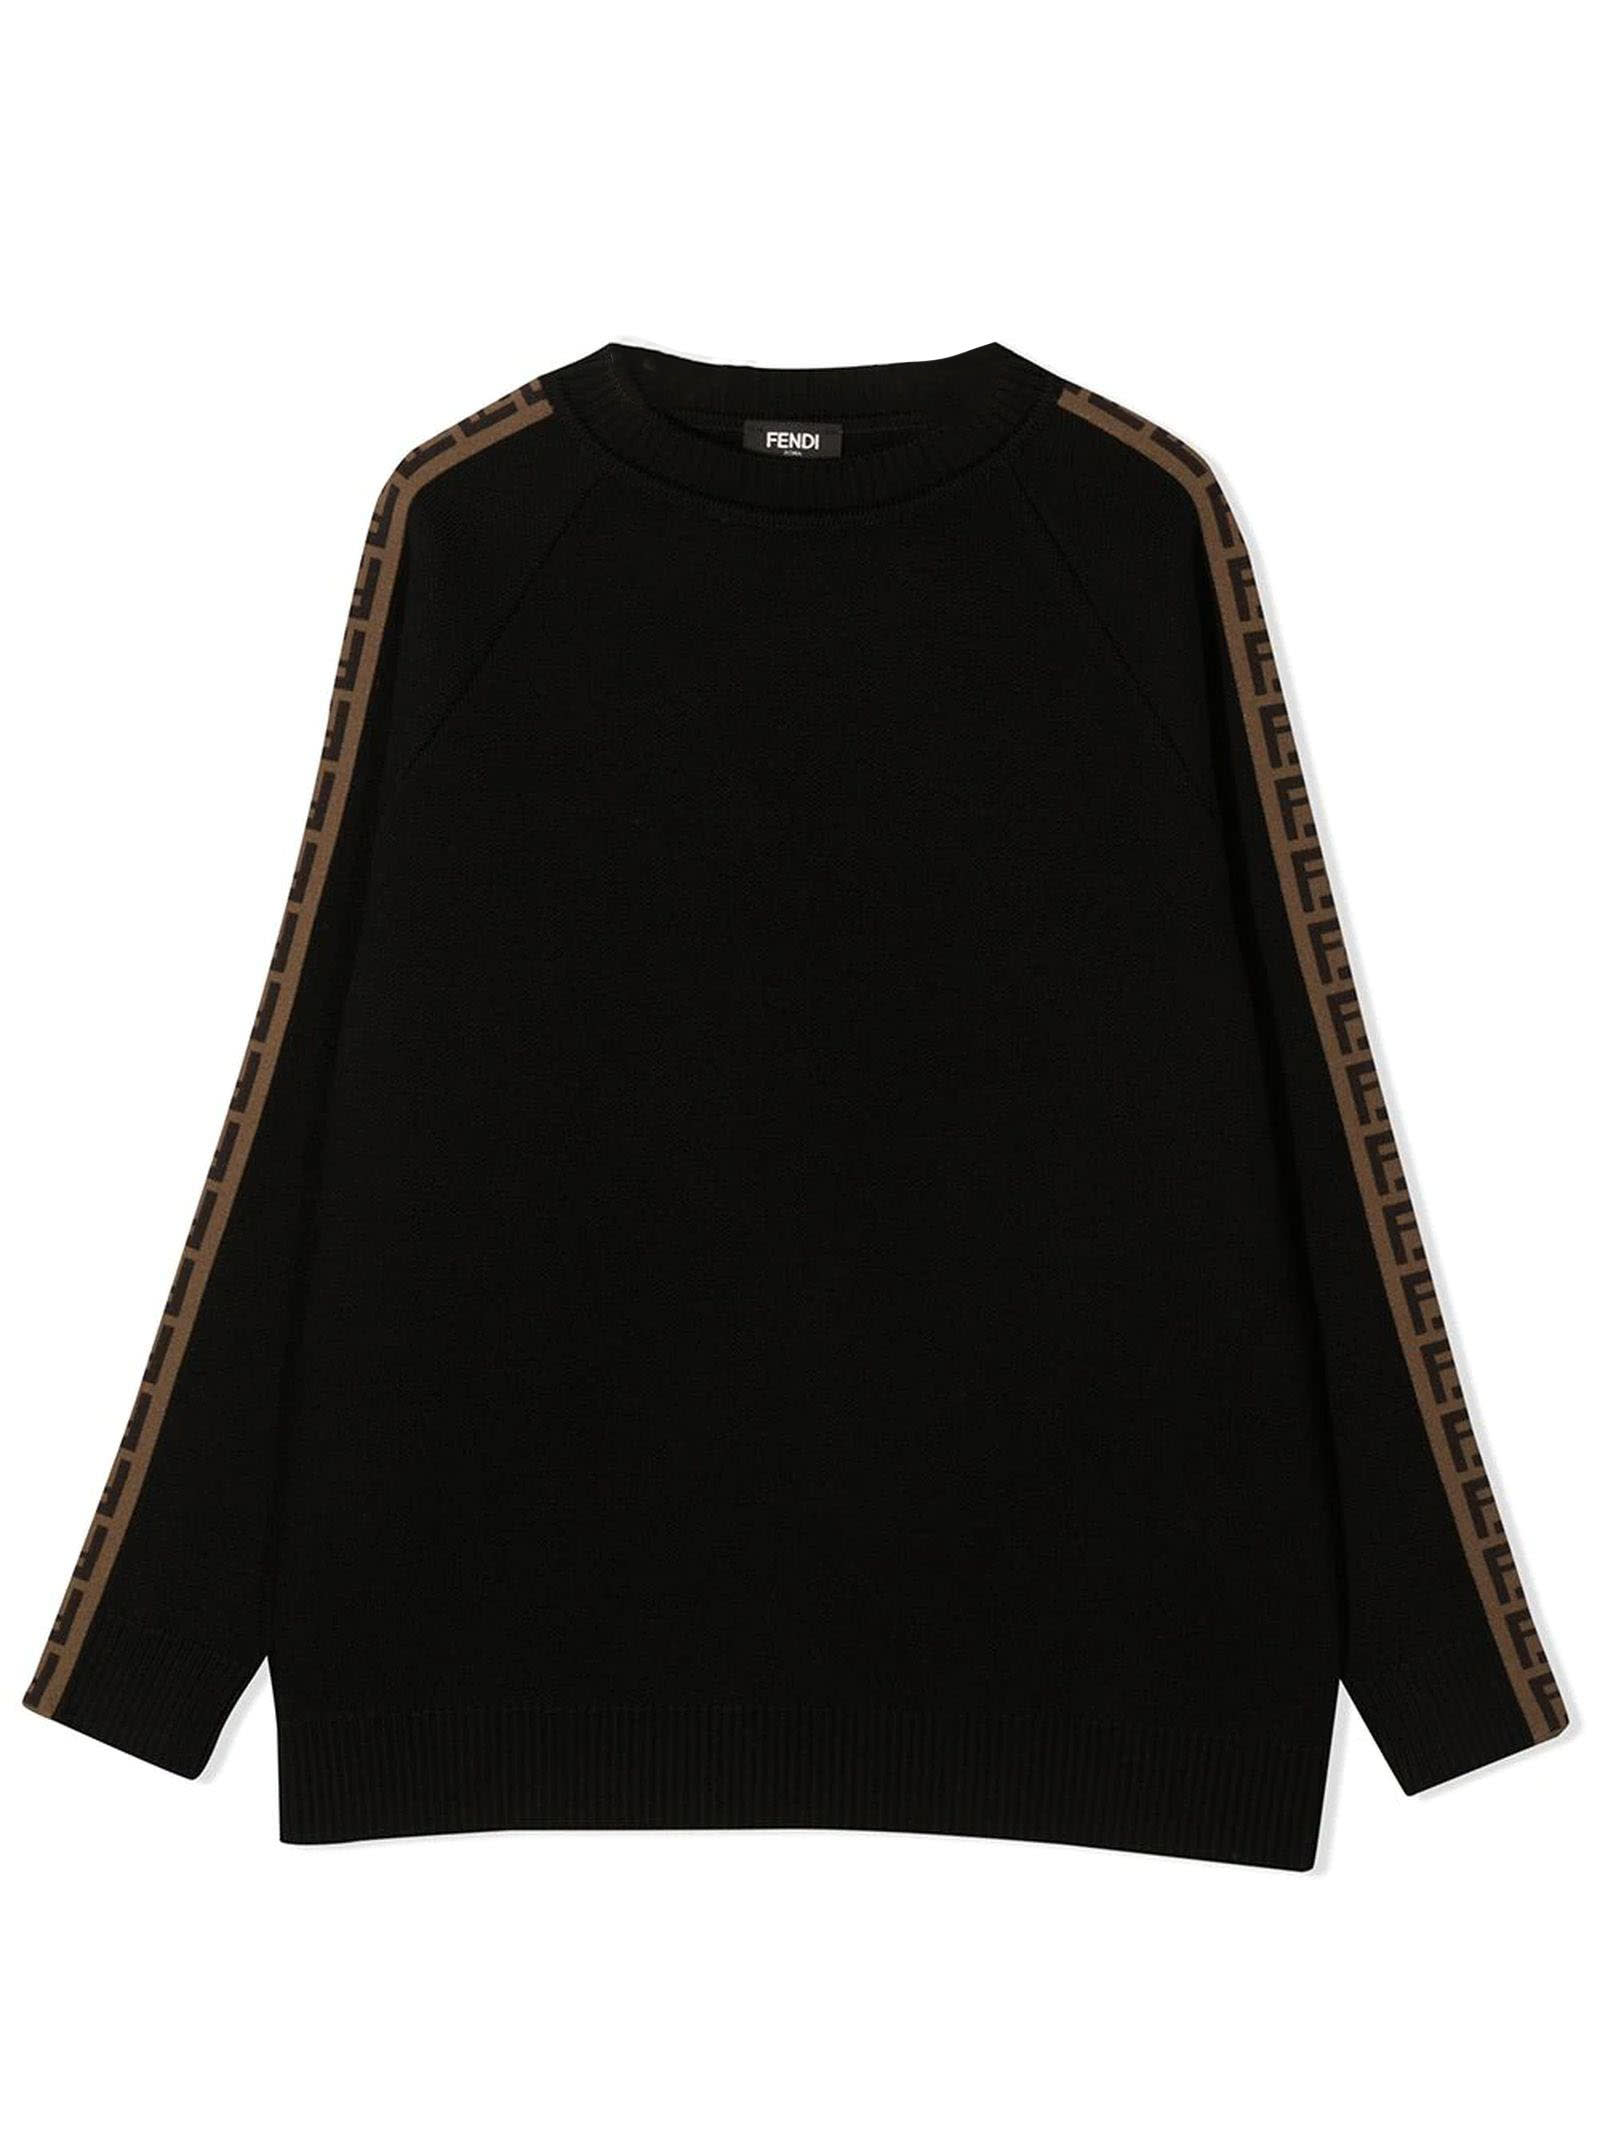 Fendi Black Virgin Wool Sweatshirt